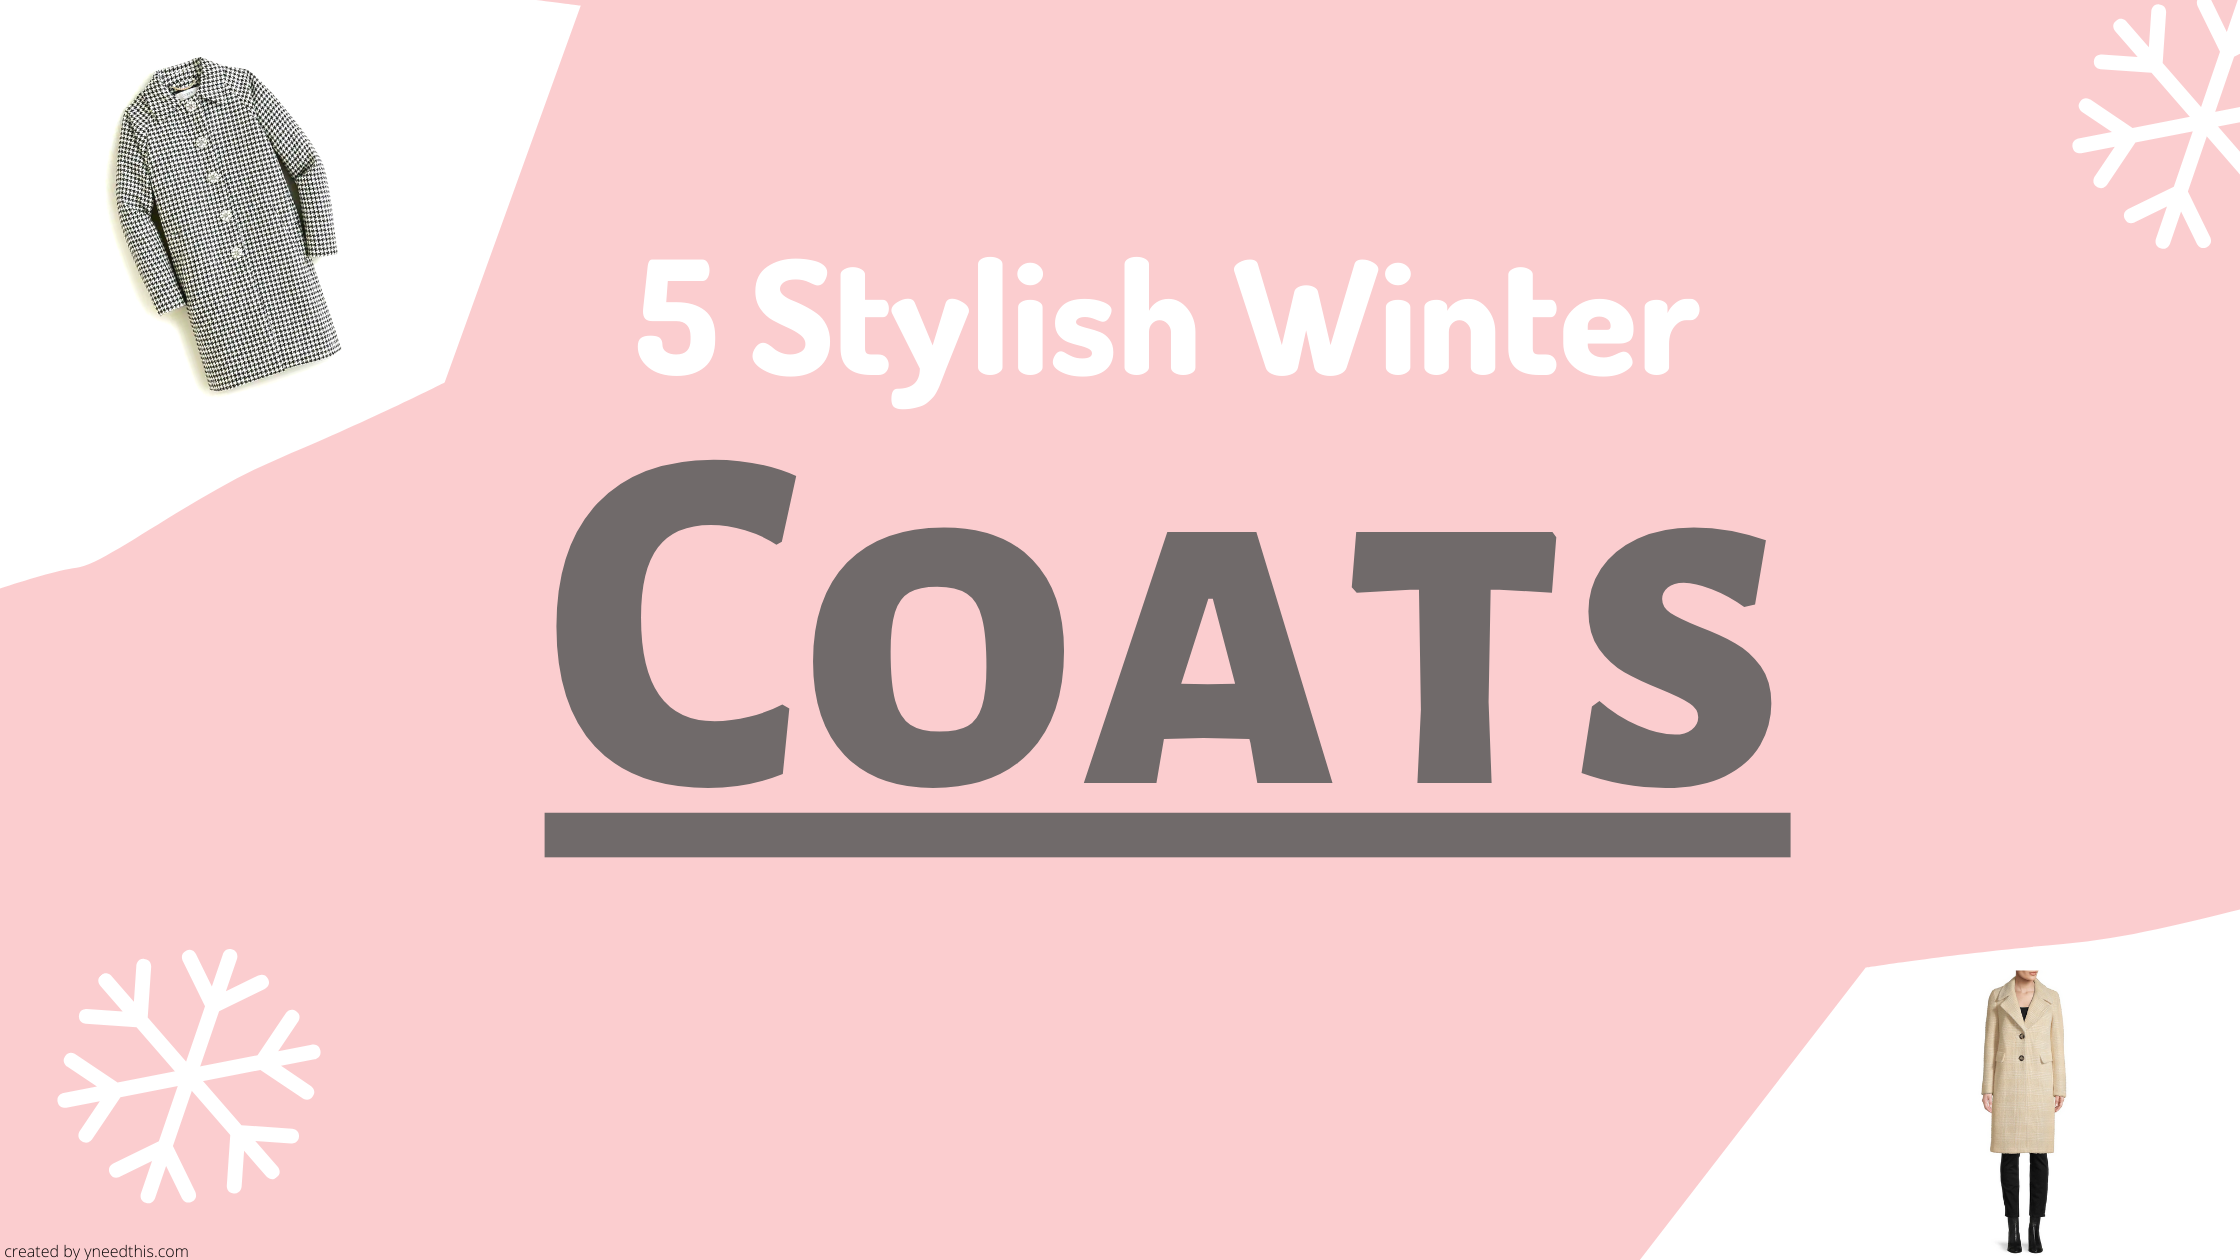 Five Stylish Coats #Winter #Fall #Fashion